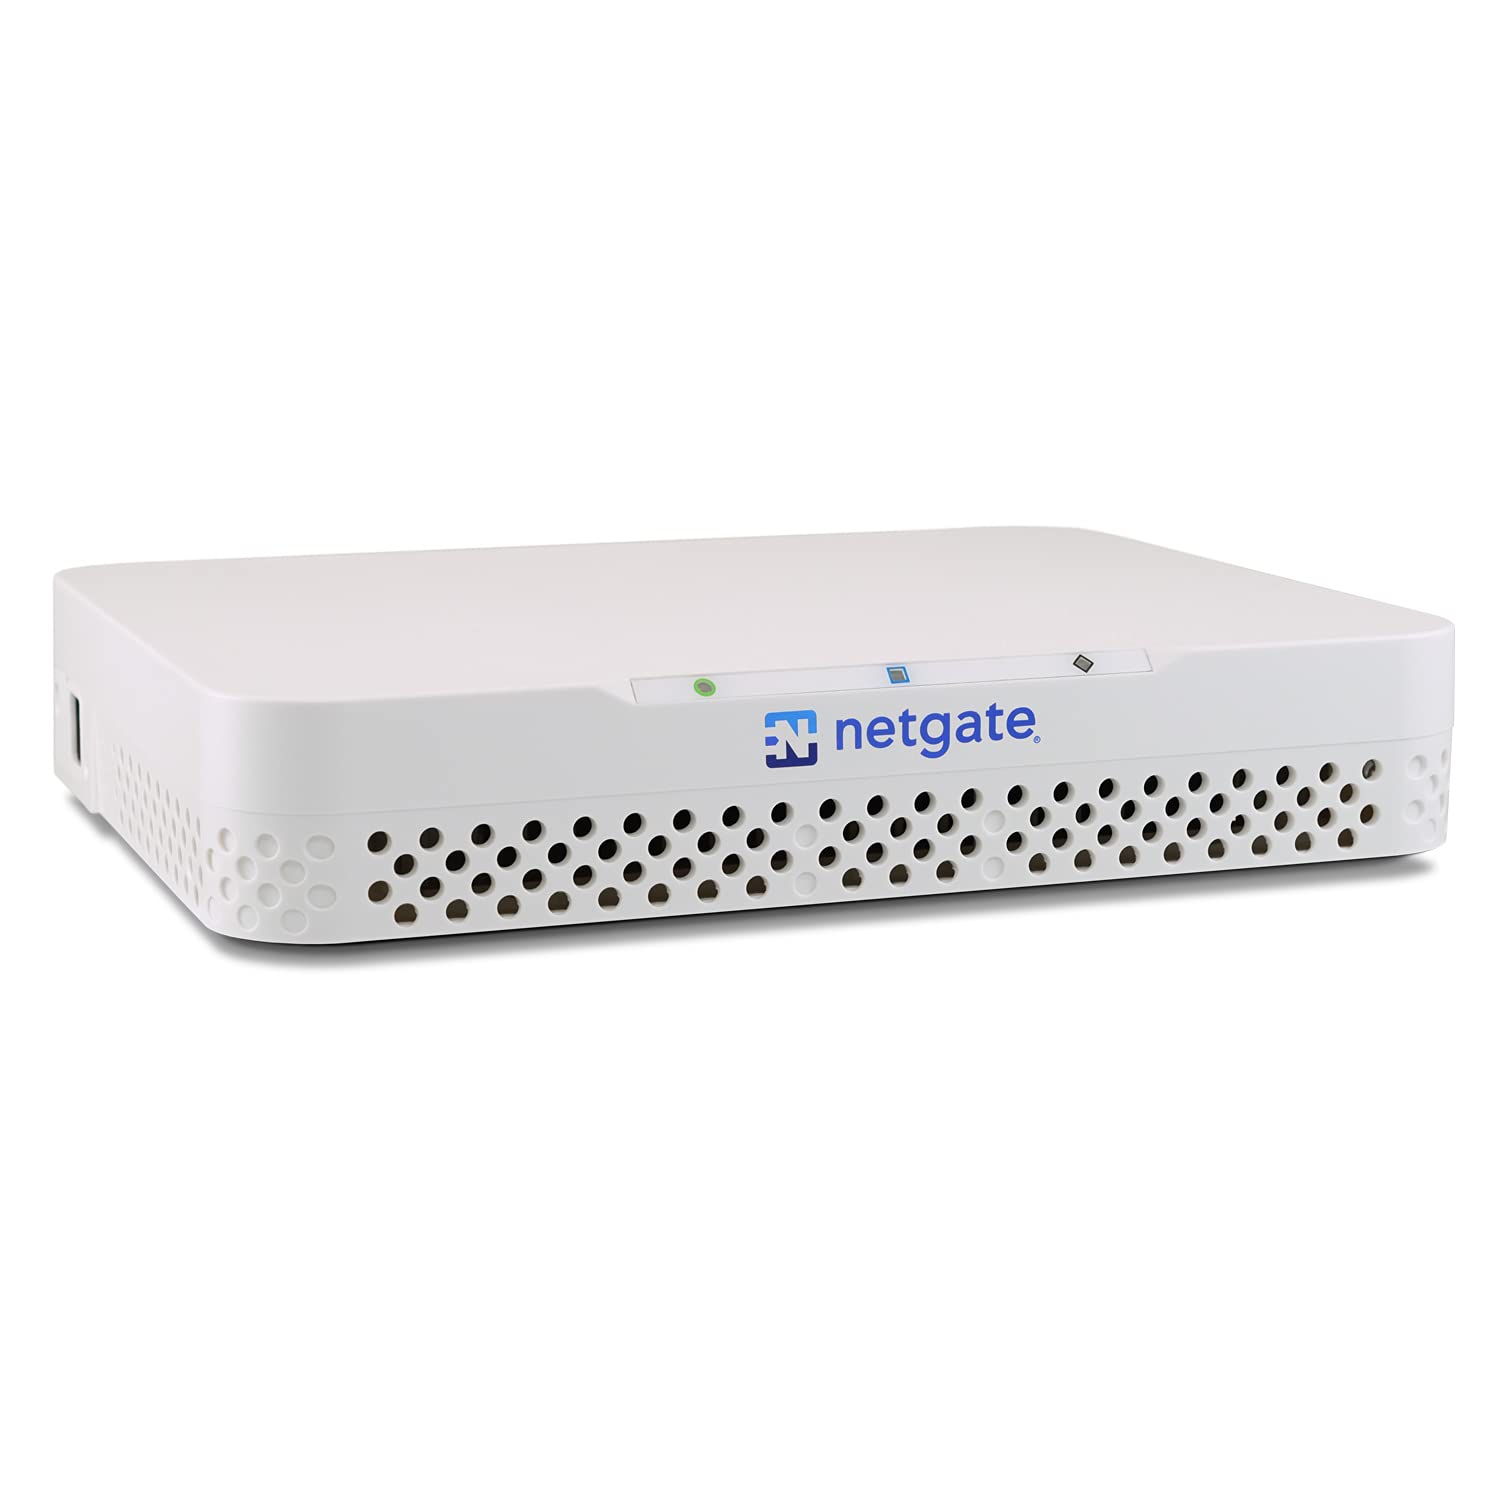 Netgate SG-4100 pfSense Firewall